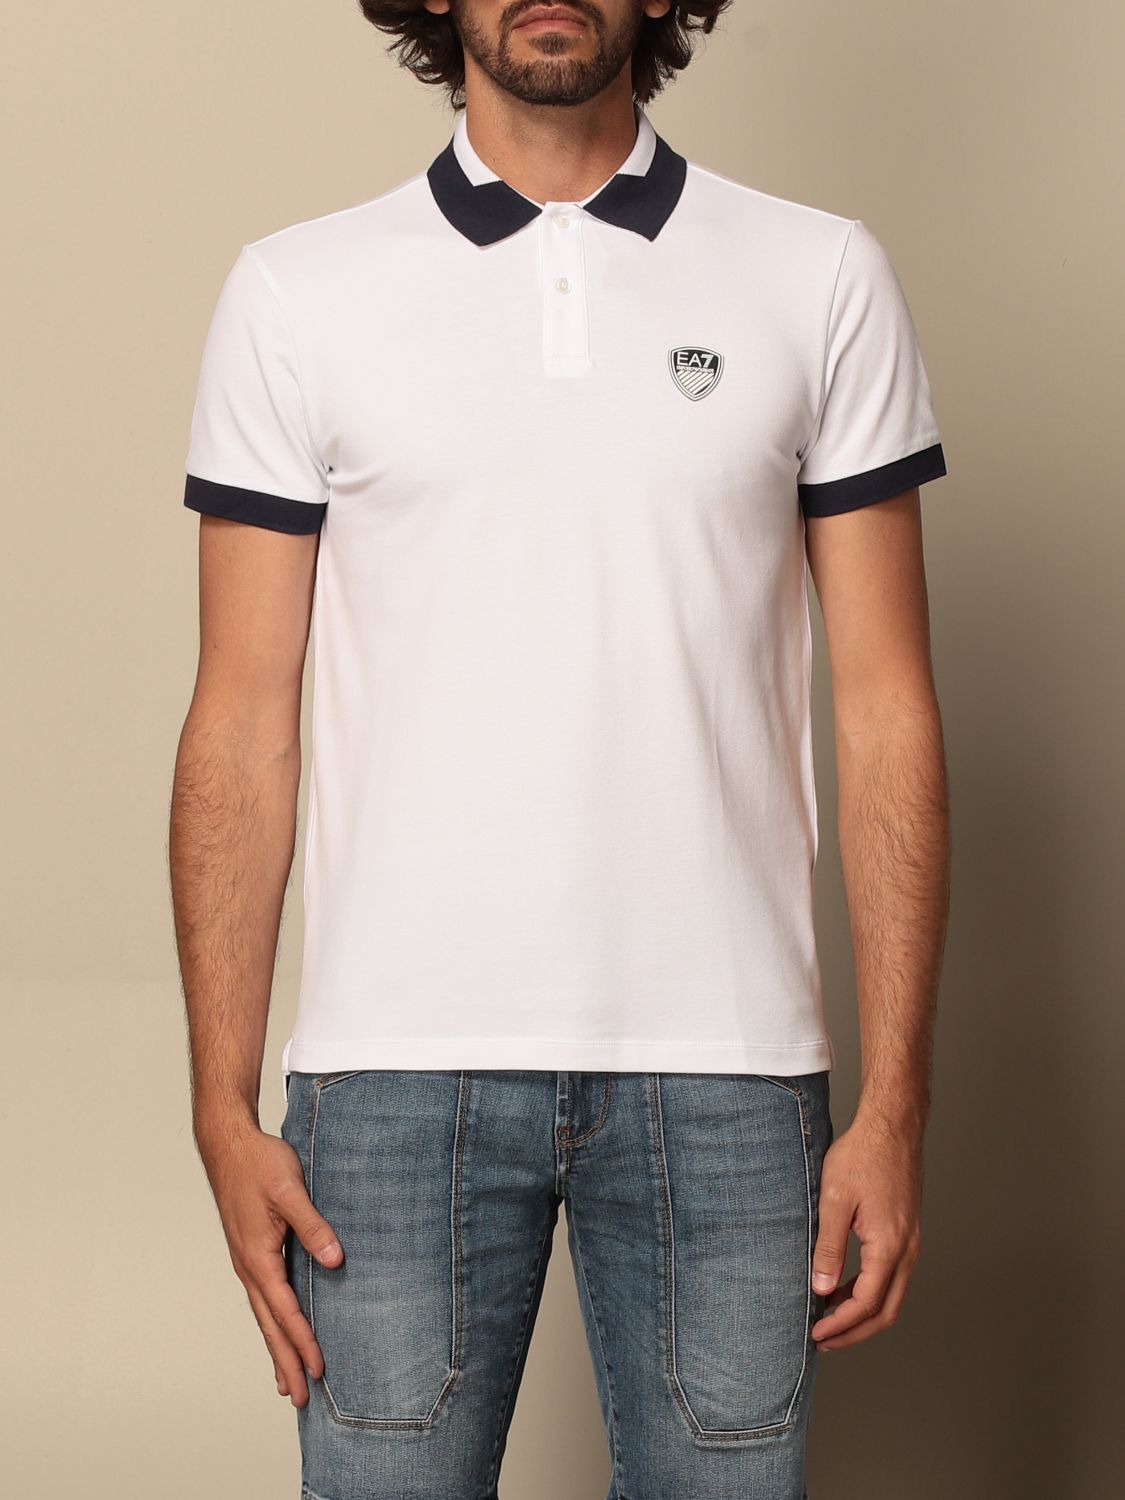 EA7: polo shirt in cotton with logo - White | Ea7 polo shirt 3KPF07 ...